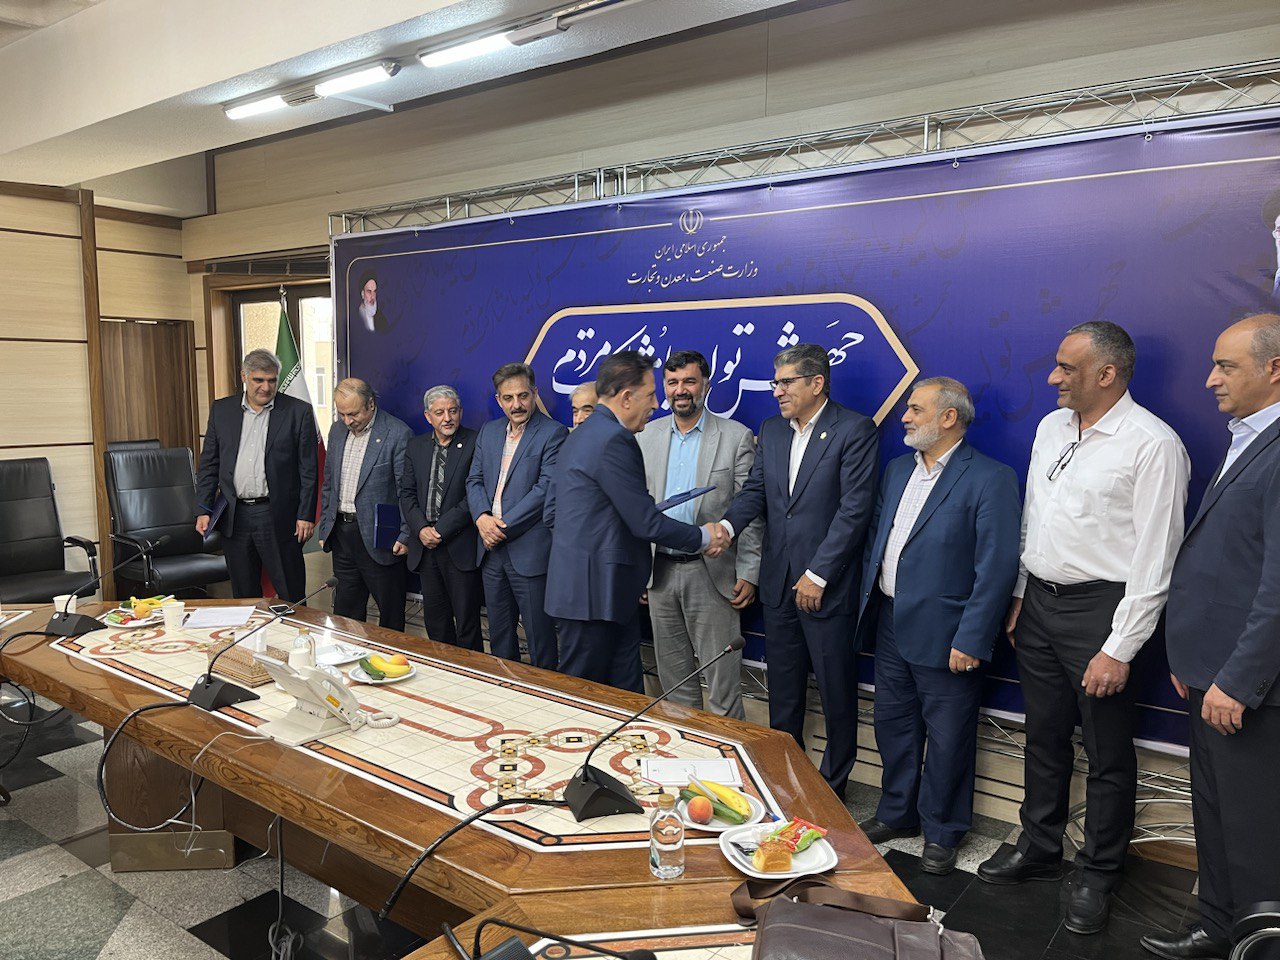 حضور مدیر عامل شرکت صدرا در همایش شناخت قابلیت ها و ظرفیت های طراحی شناور در کشور – شركت صنعتی دریایی ایران